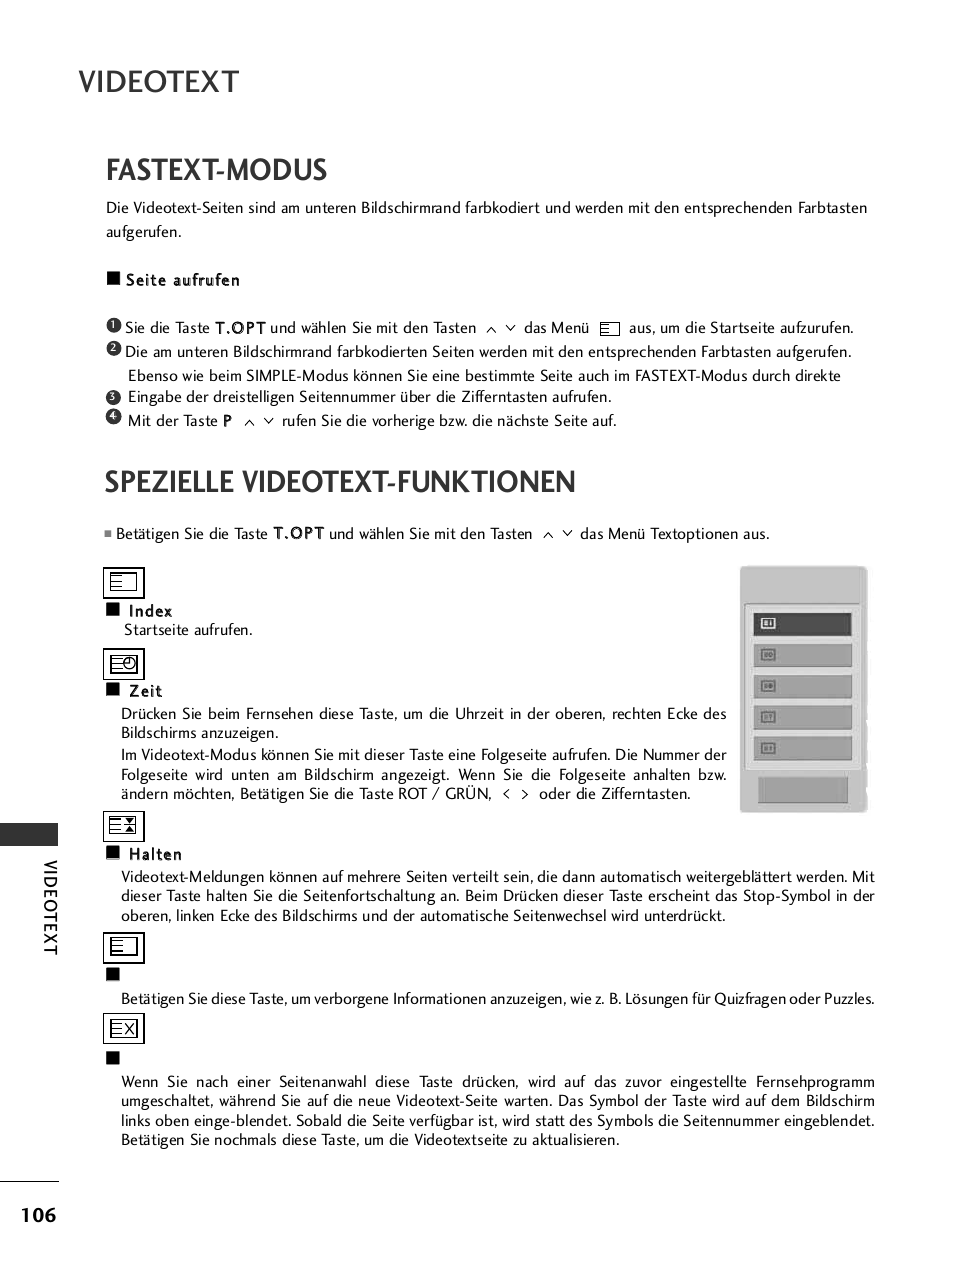 Fastext-modus, Spezielle videotext-funktionen, Videotext | LG 42PQ6010 Benutzerhandbuch | Seite 108 / 124